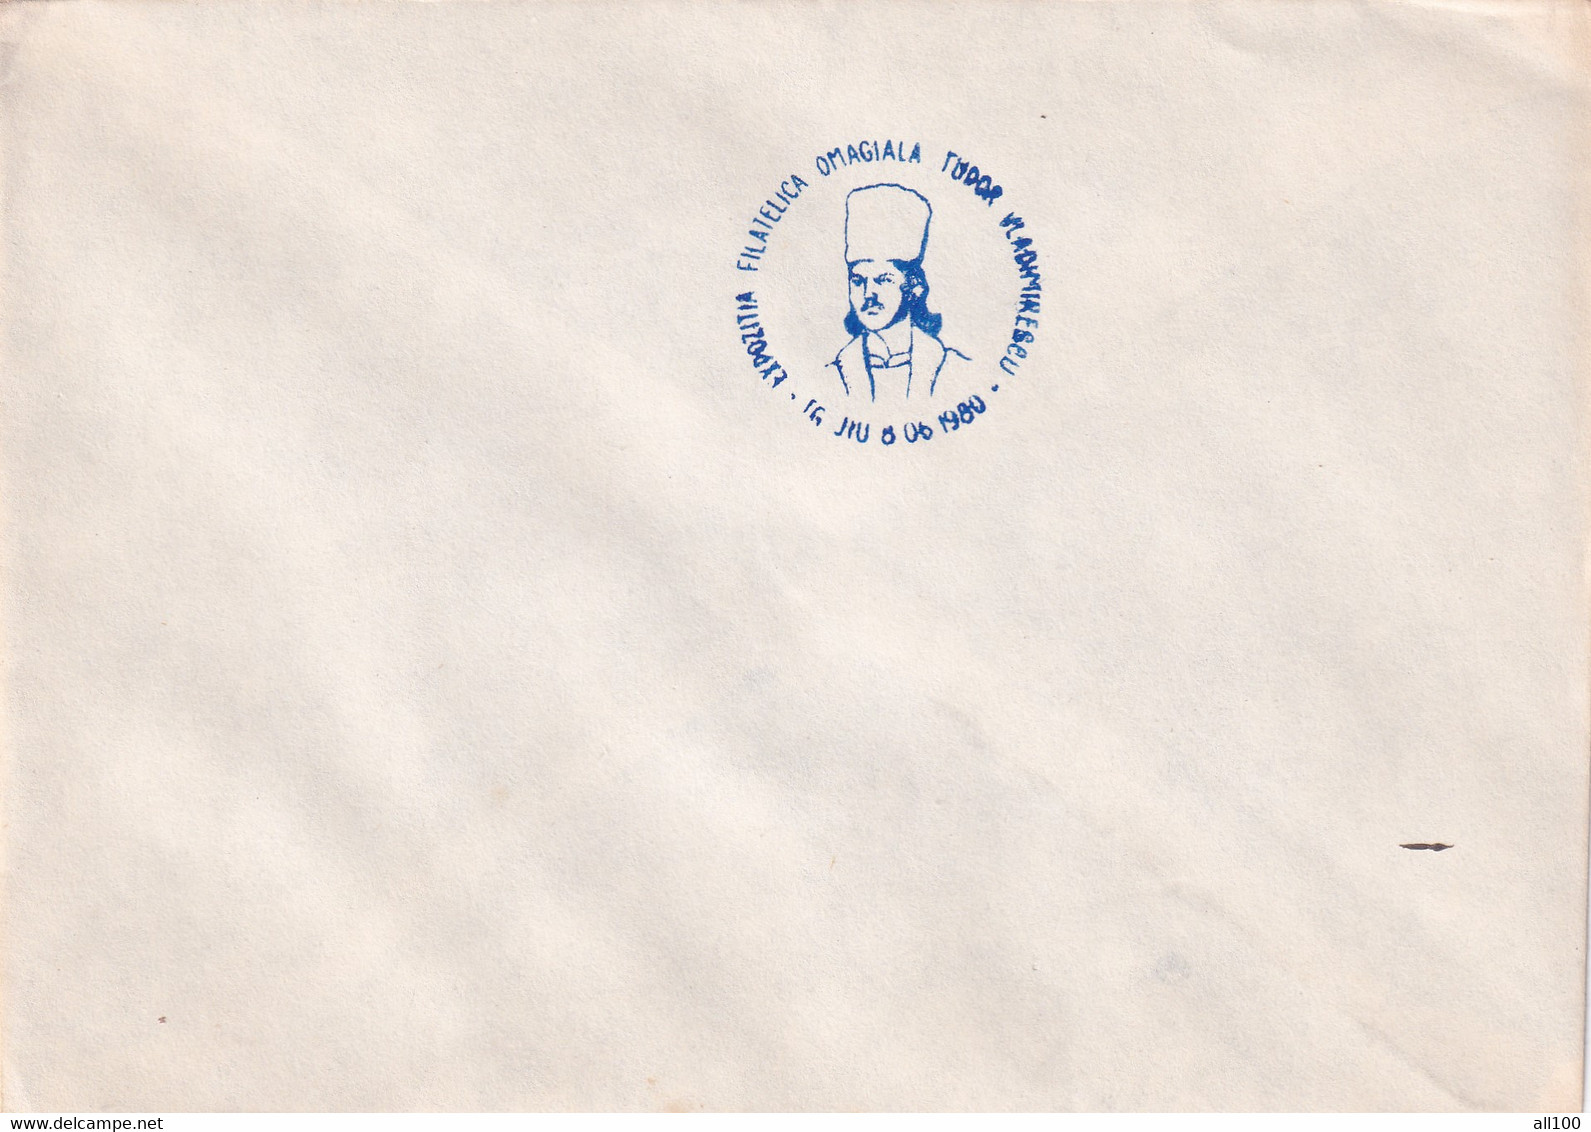 A19364 - EXPOZITIA FILATELICA OMAGIALA TUDOR VLADIMIRESCU COVER ENVELOPE UNUSED 1980 REPUBLICA SOCIALISTA ROMANIA RSR - Storia Postale